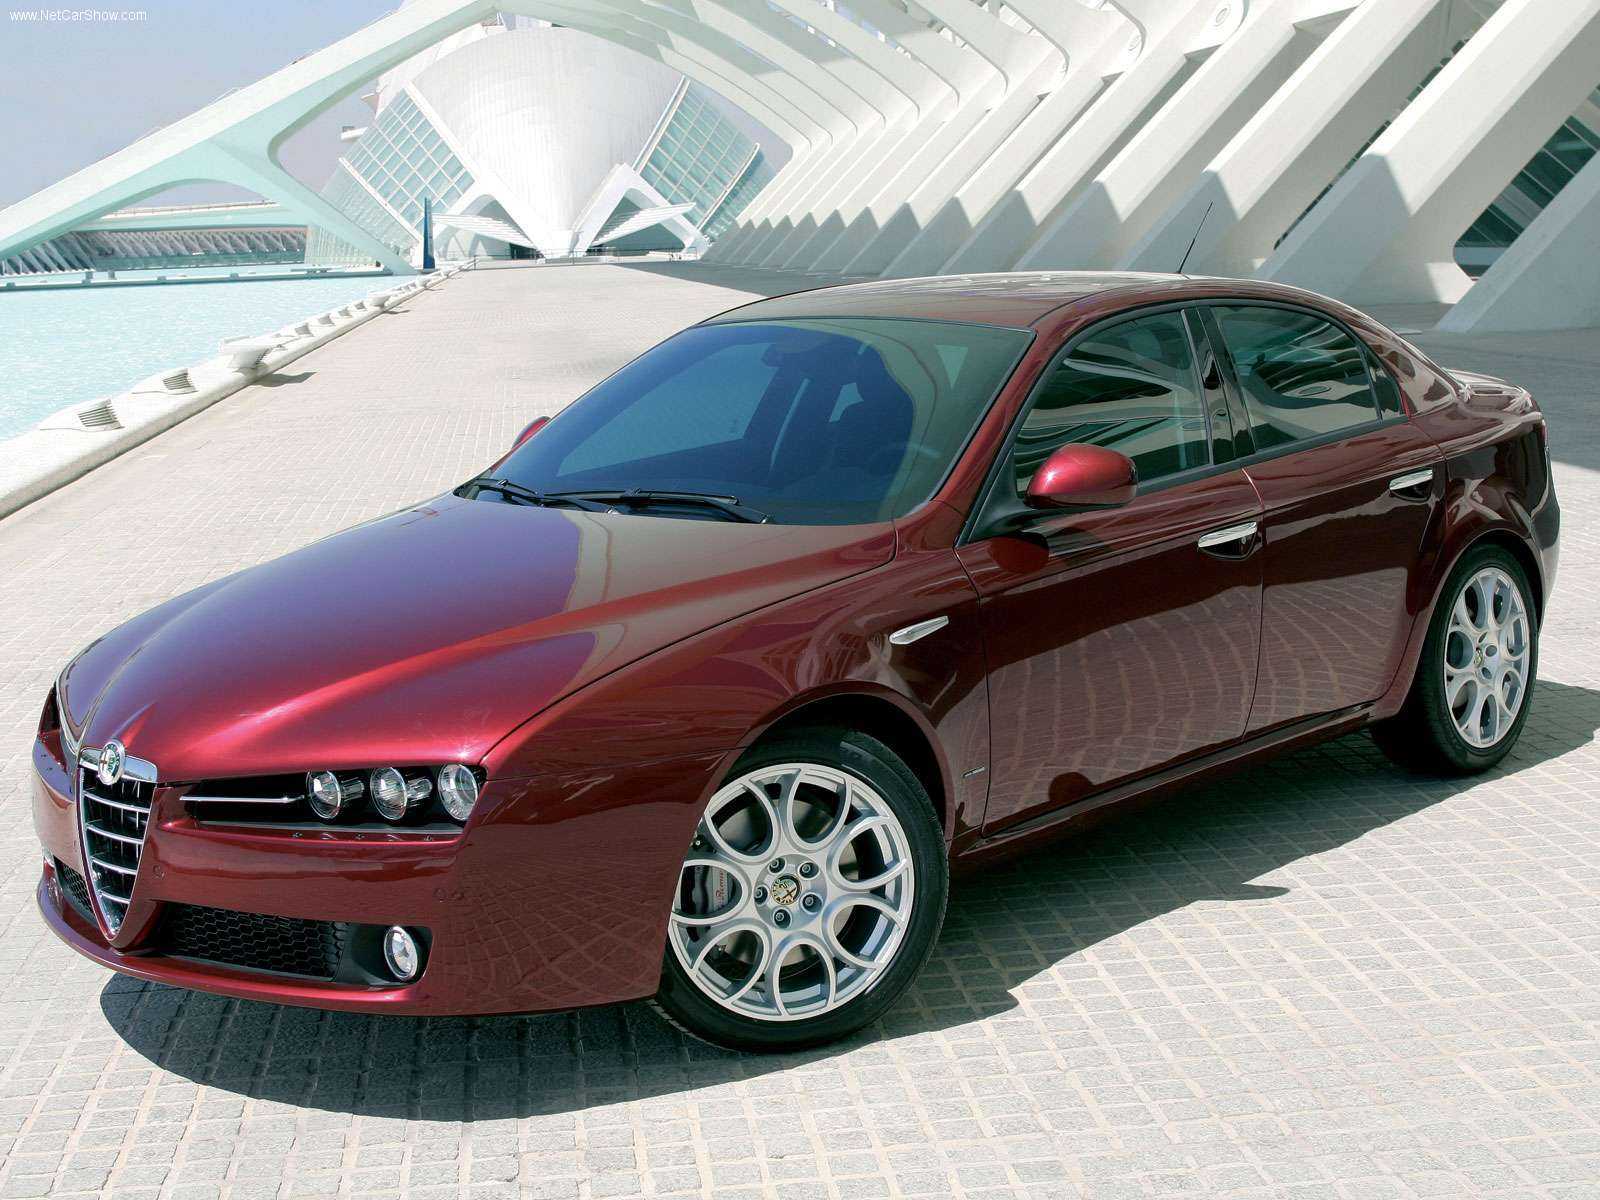 Alfa romeo 159 цена, технические характеристики, фото, видео тест-драйв альфа ромео 159